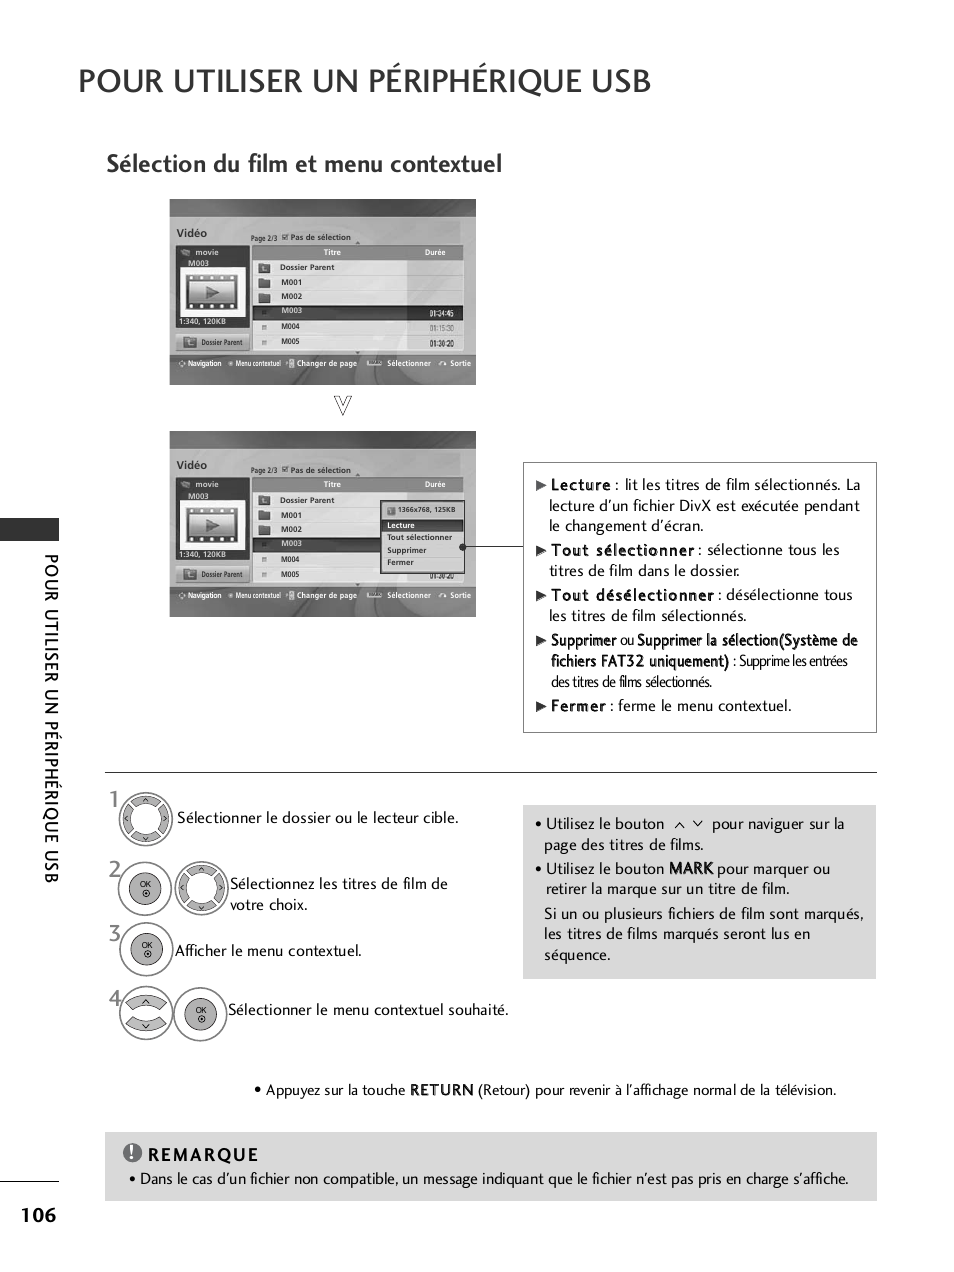 Sélection du film et menu contextuel, Pour utiliser un périphérique usb | LG 42LH9000 Manuel d'utilisation | Page 108 / 180